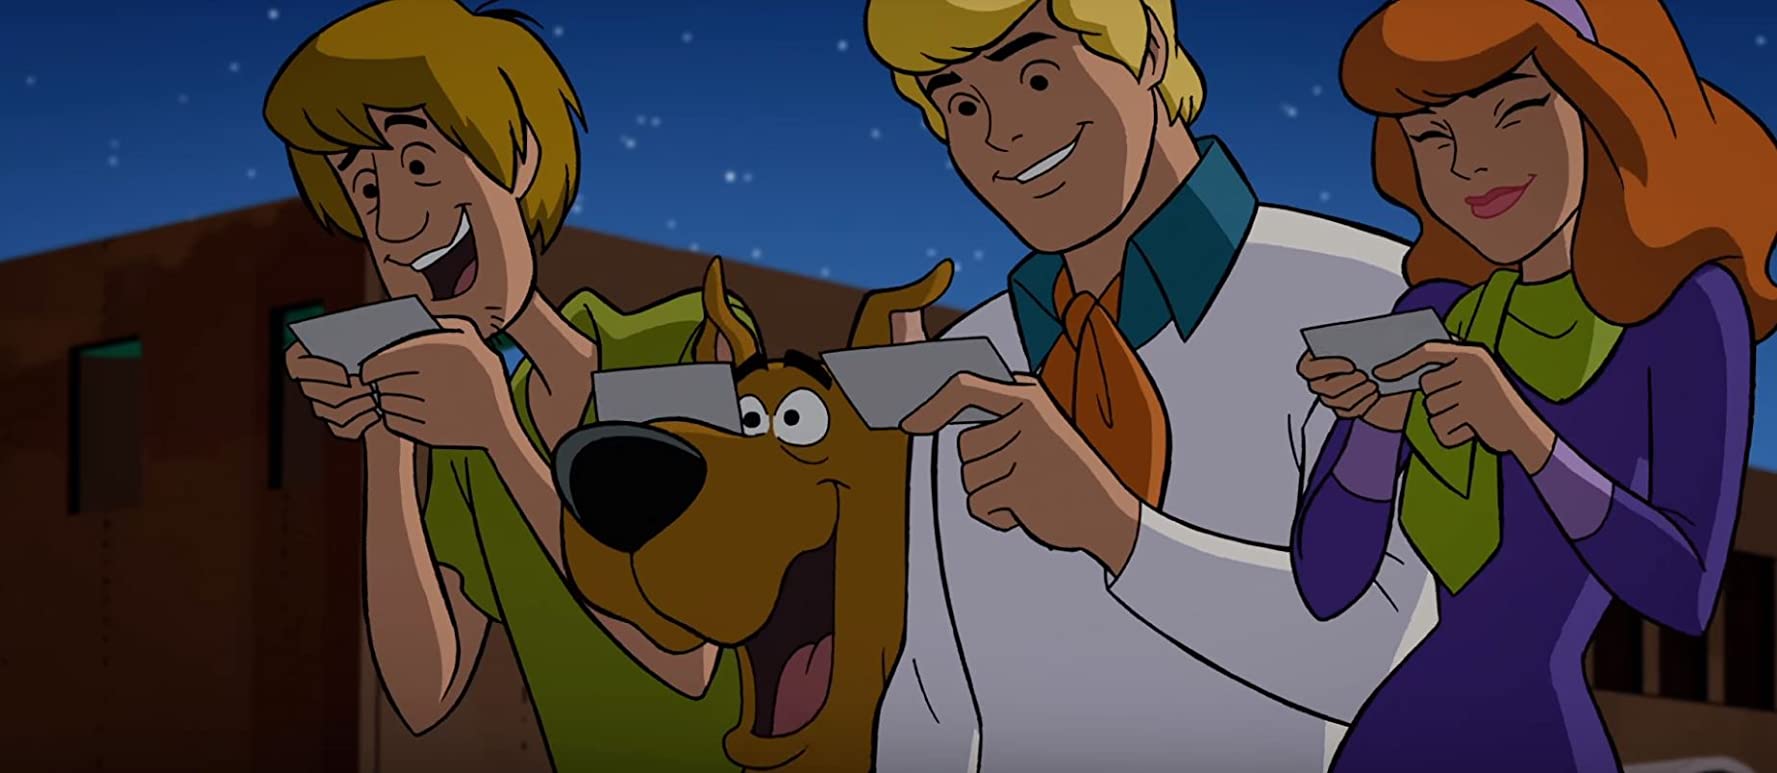 Scooby-Doo e Batman - O caso não resolvido